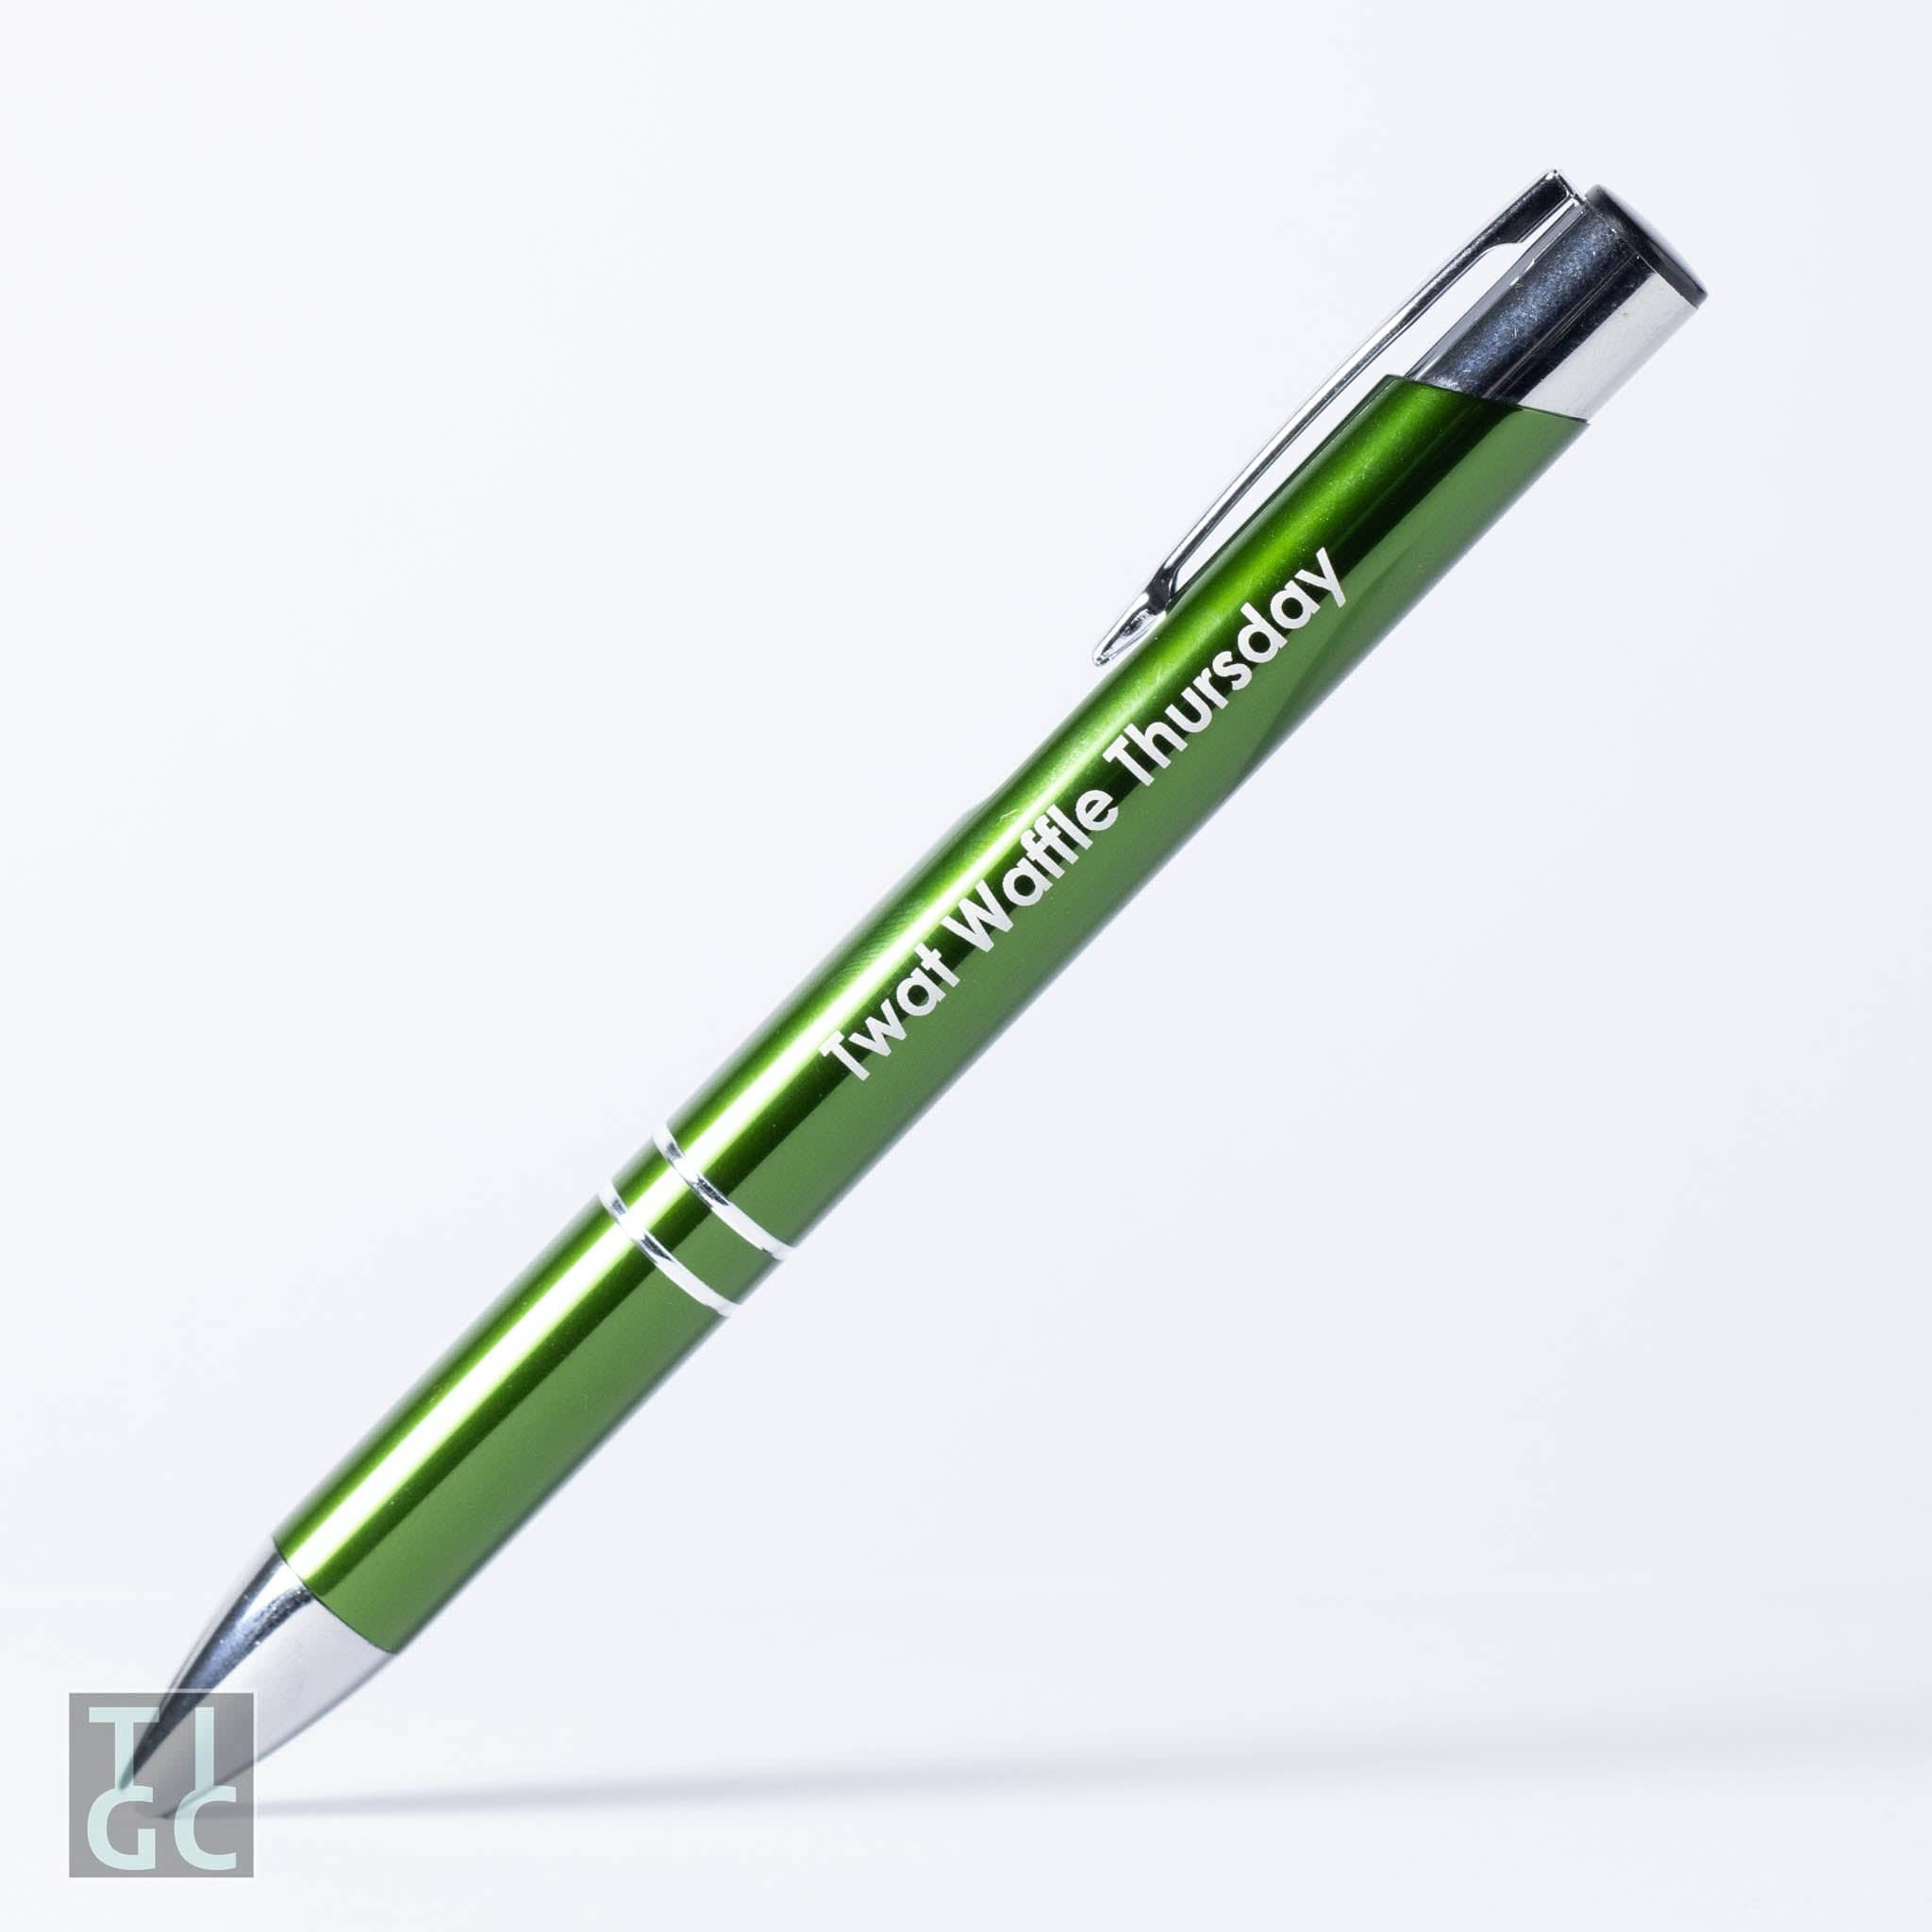 Naughty-7 Day of Week Pen Set – briggsdesigns2022